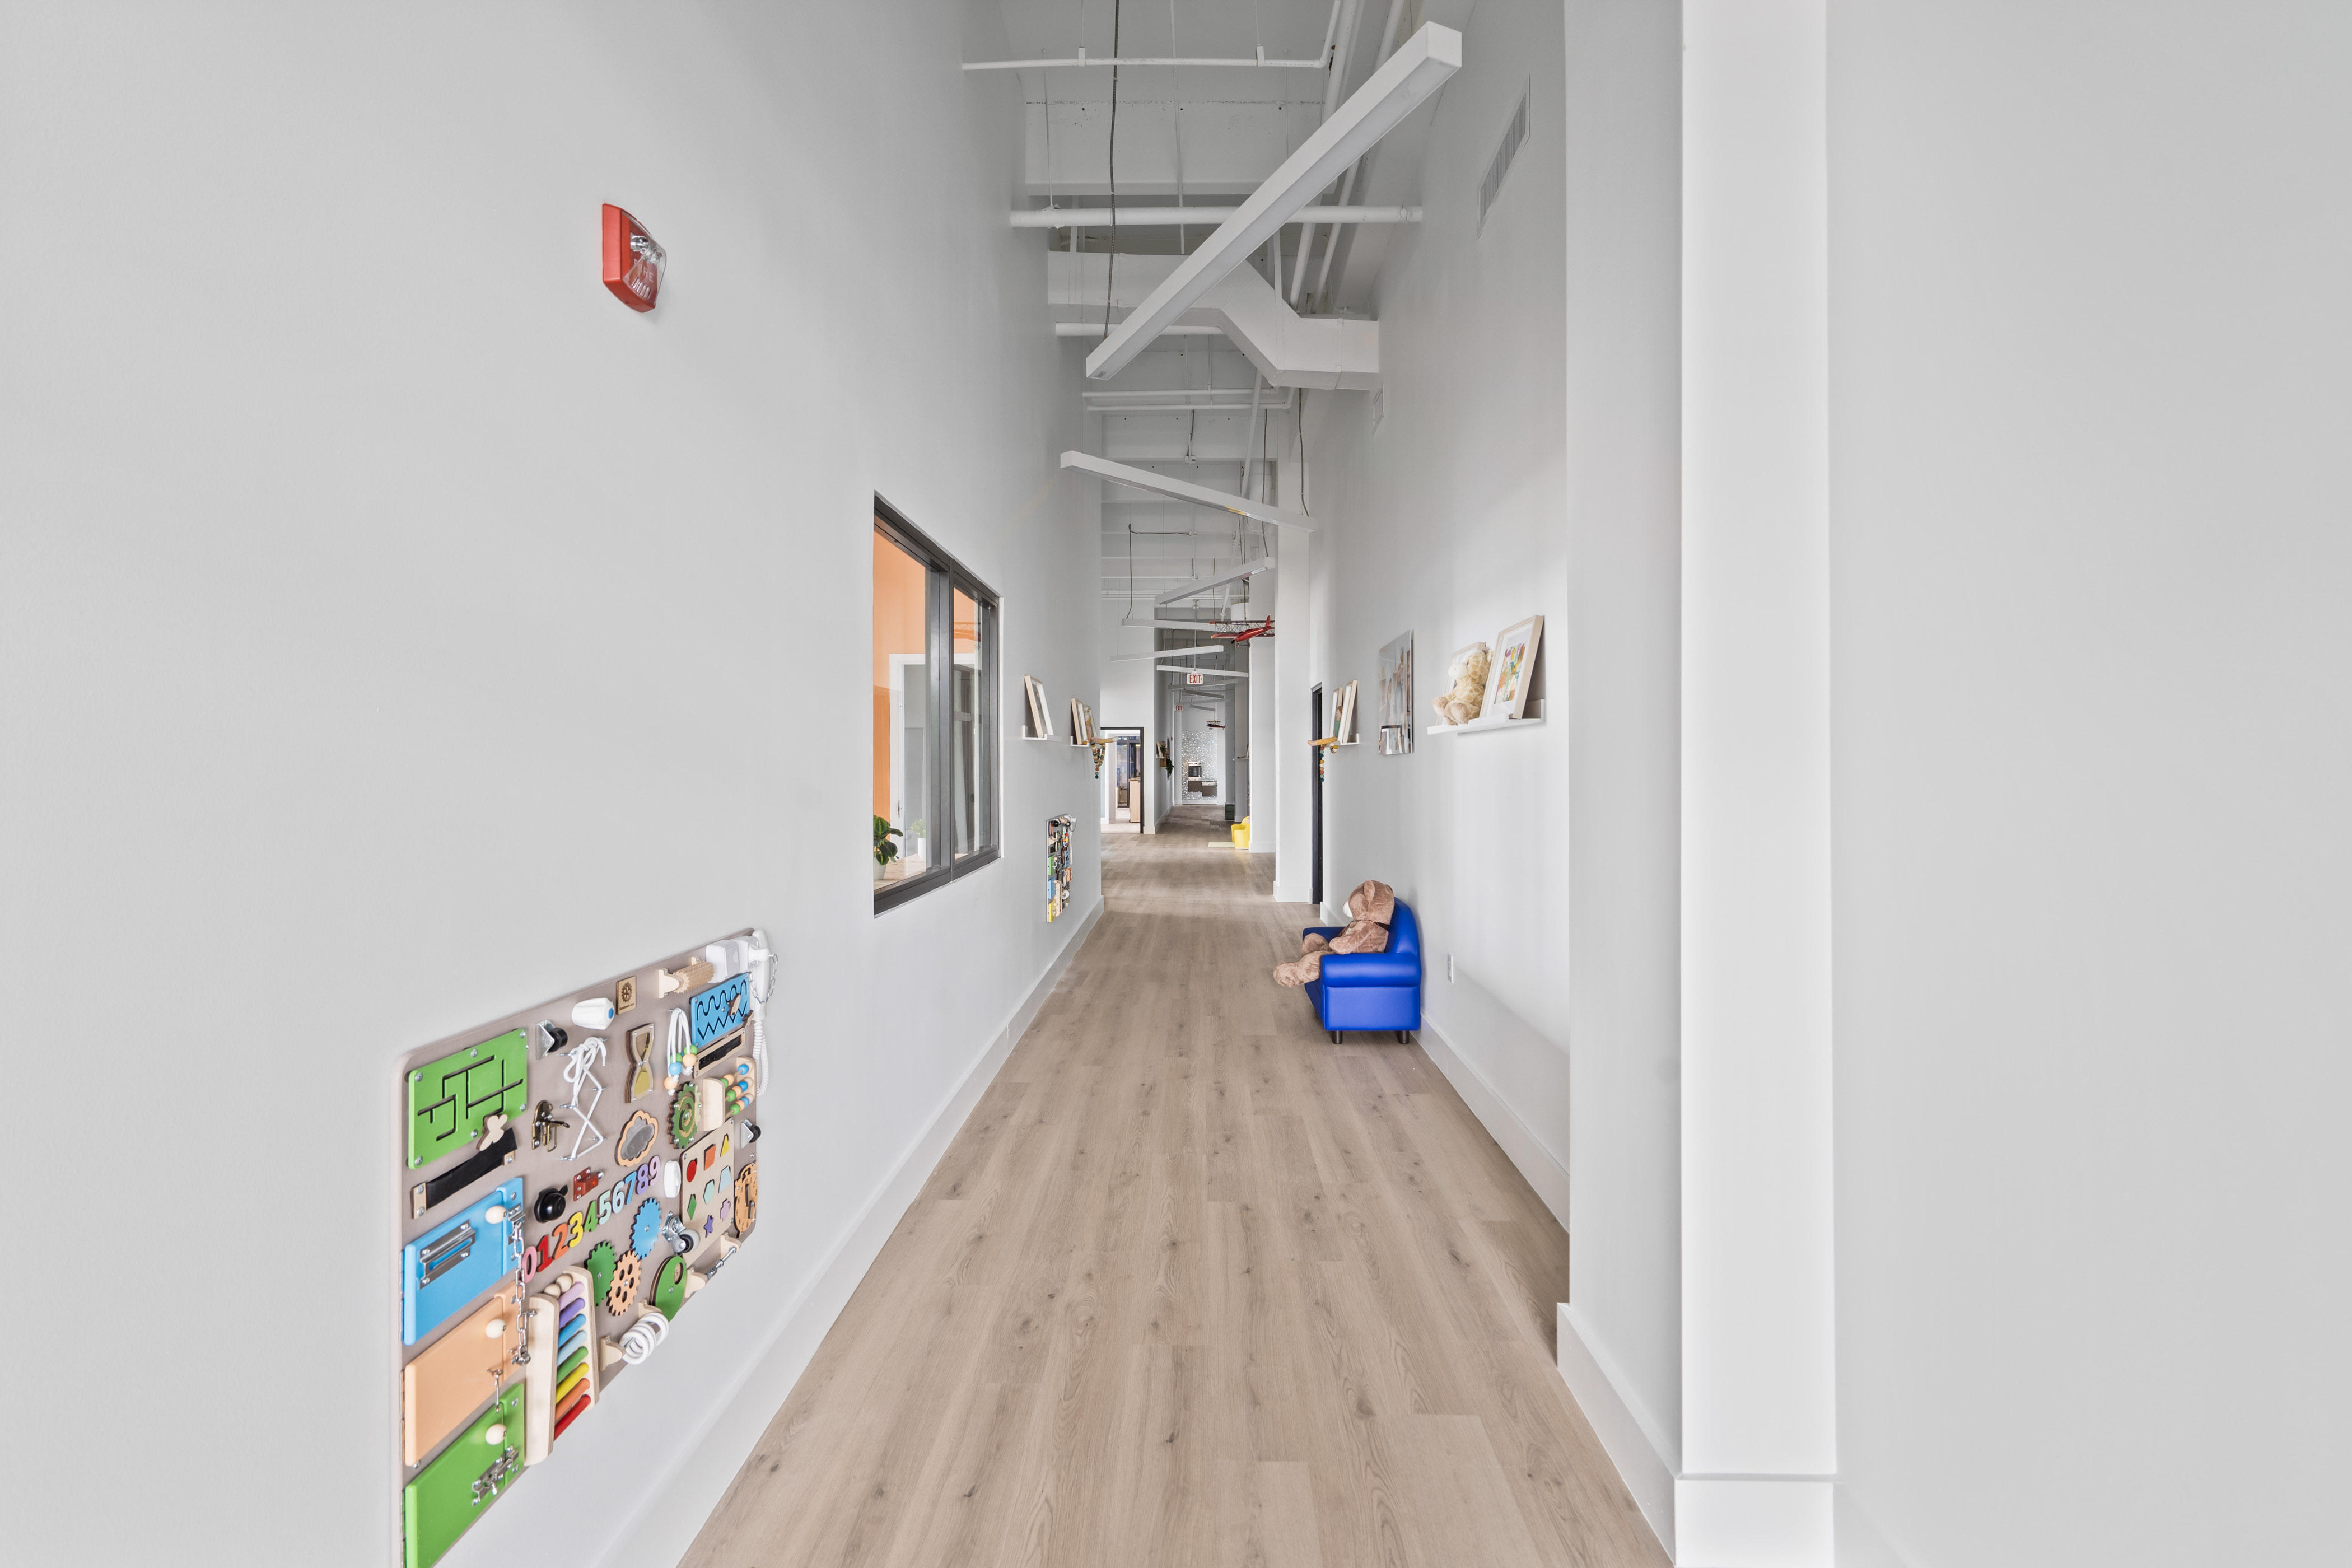 Preschool Hallway